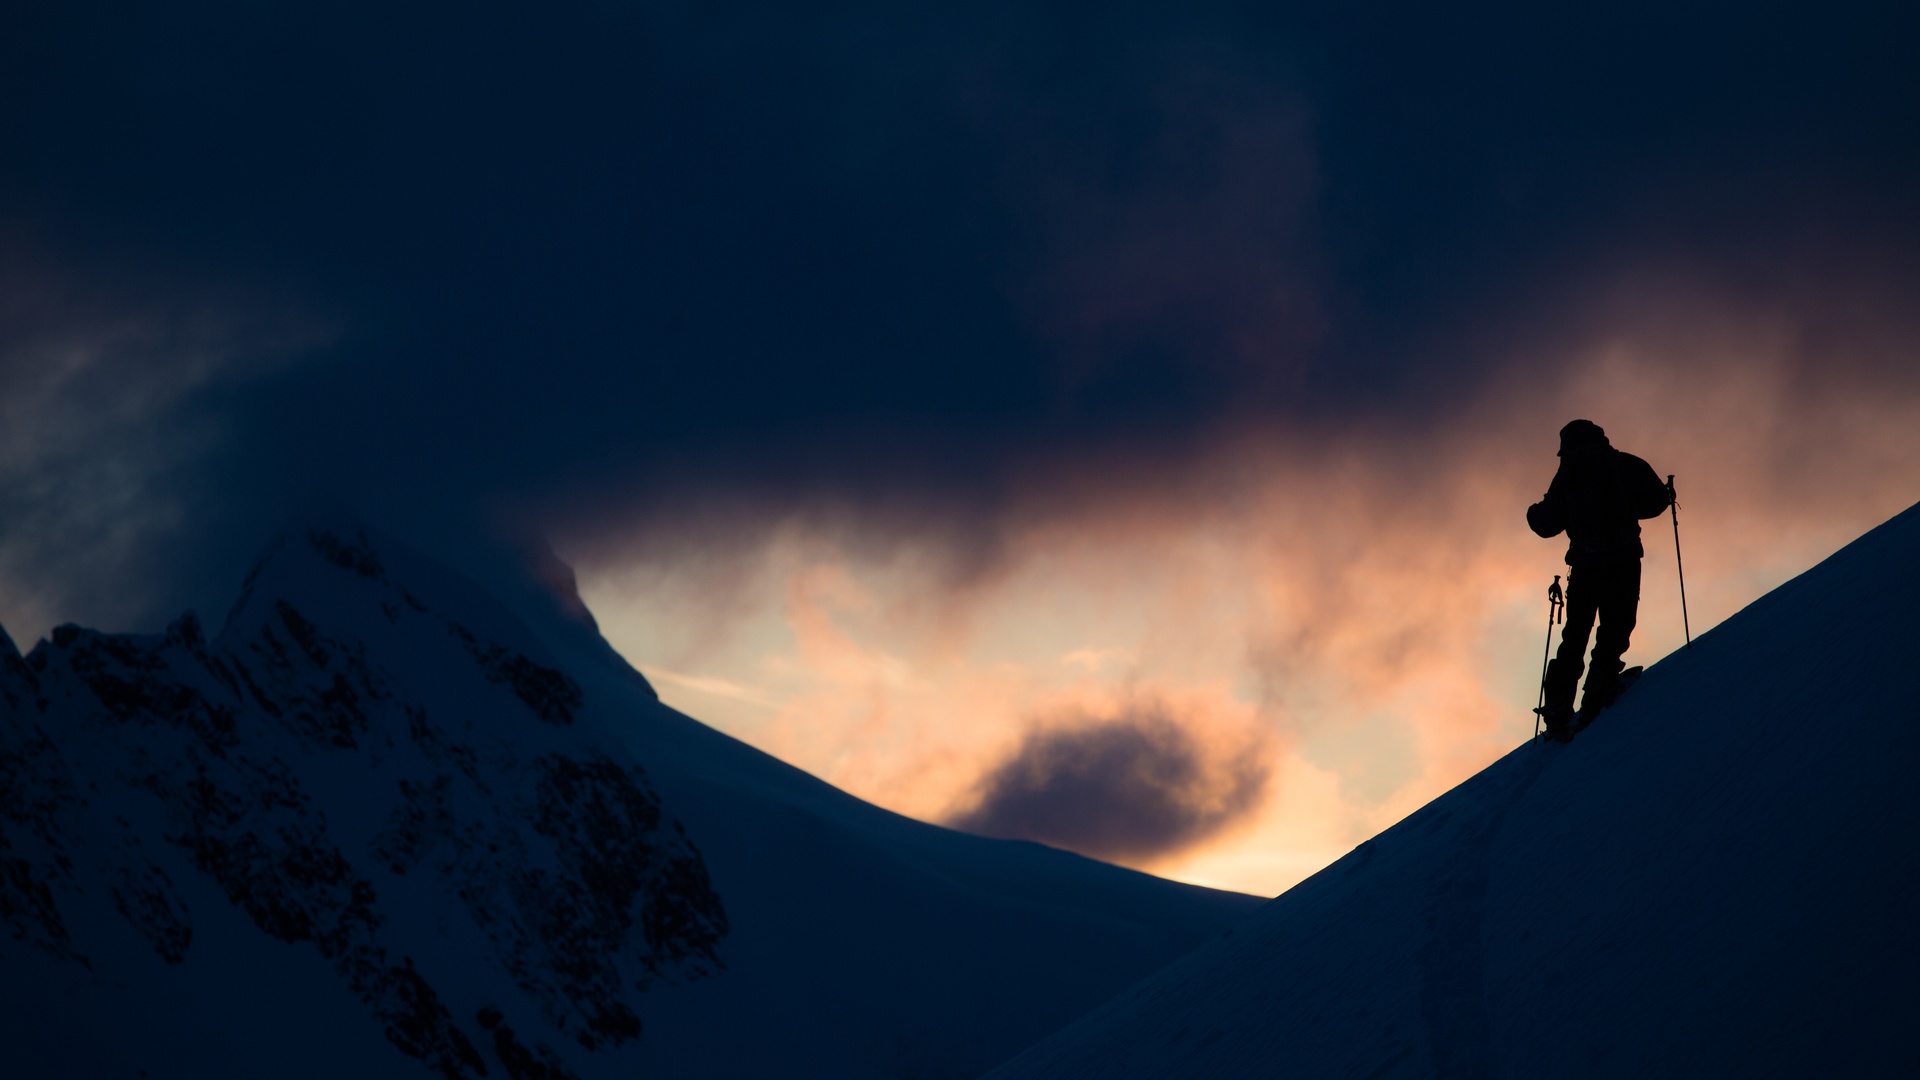 Fond d'écran - Ski Alpin.jpg